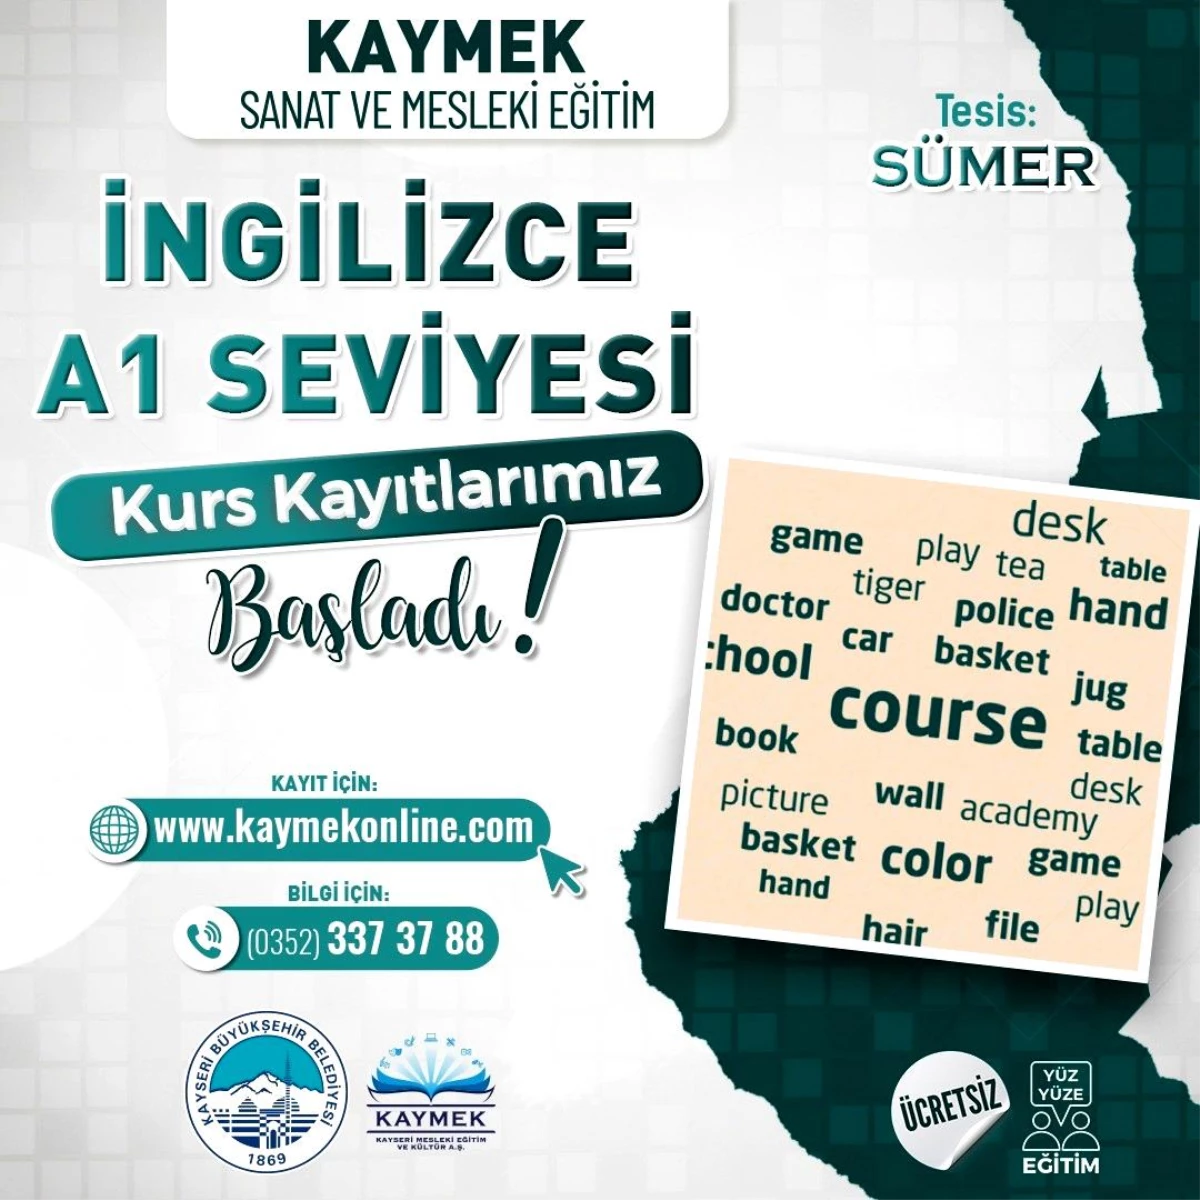 Kayseri Büyükşehir Belediyesi İngilizce ve Arapça kurslarına kayıtlar başladı